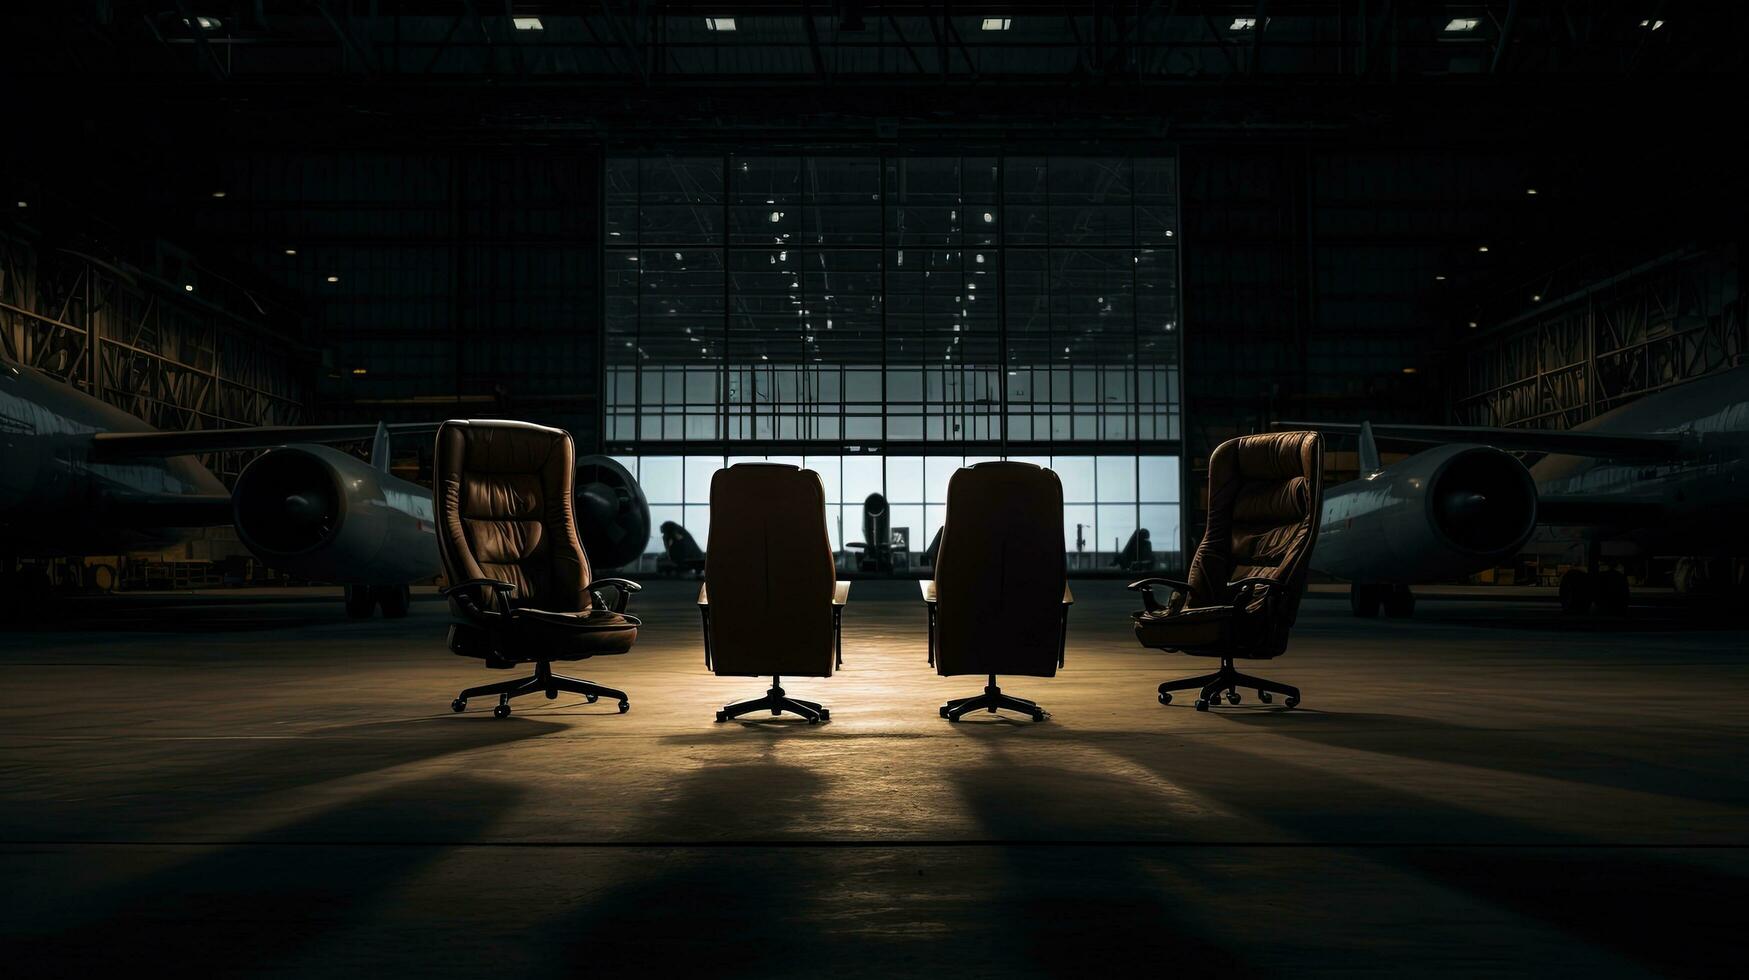 une la personne est assis dans le chaise à le loin droite scratch le sien tête comme quatre chaises occuper le ouvert hangar porte. silhouette concept photo